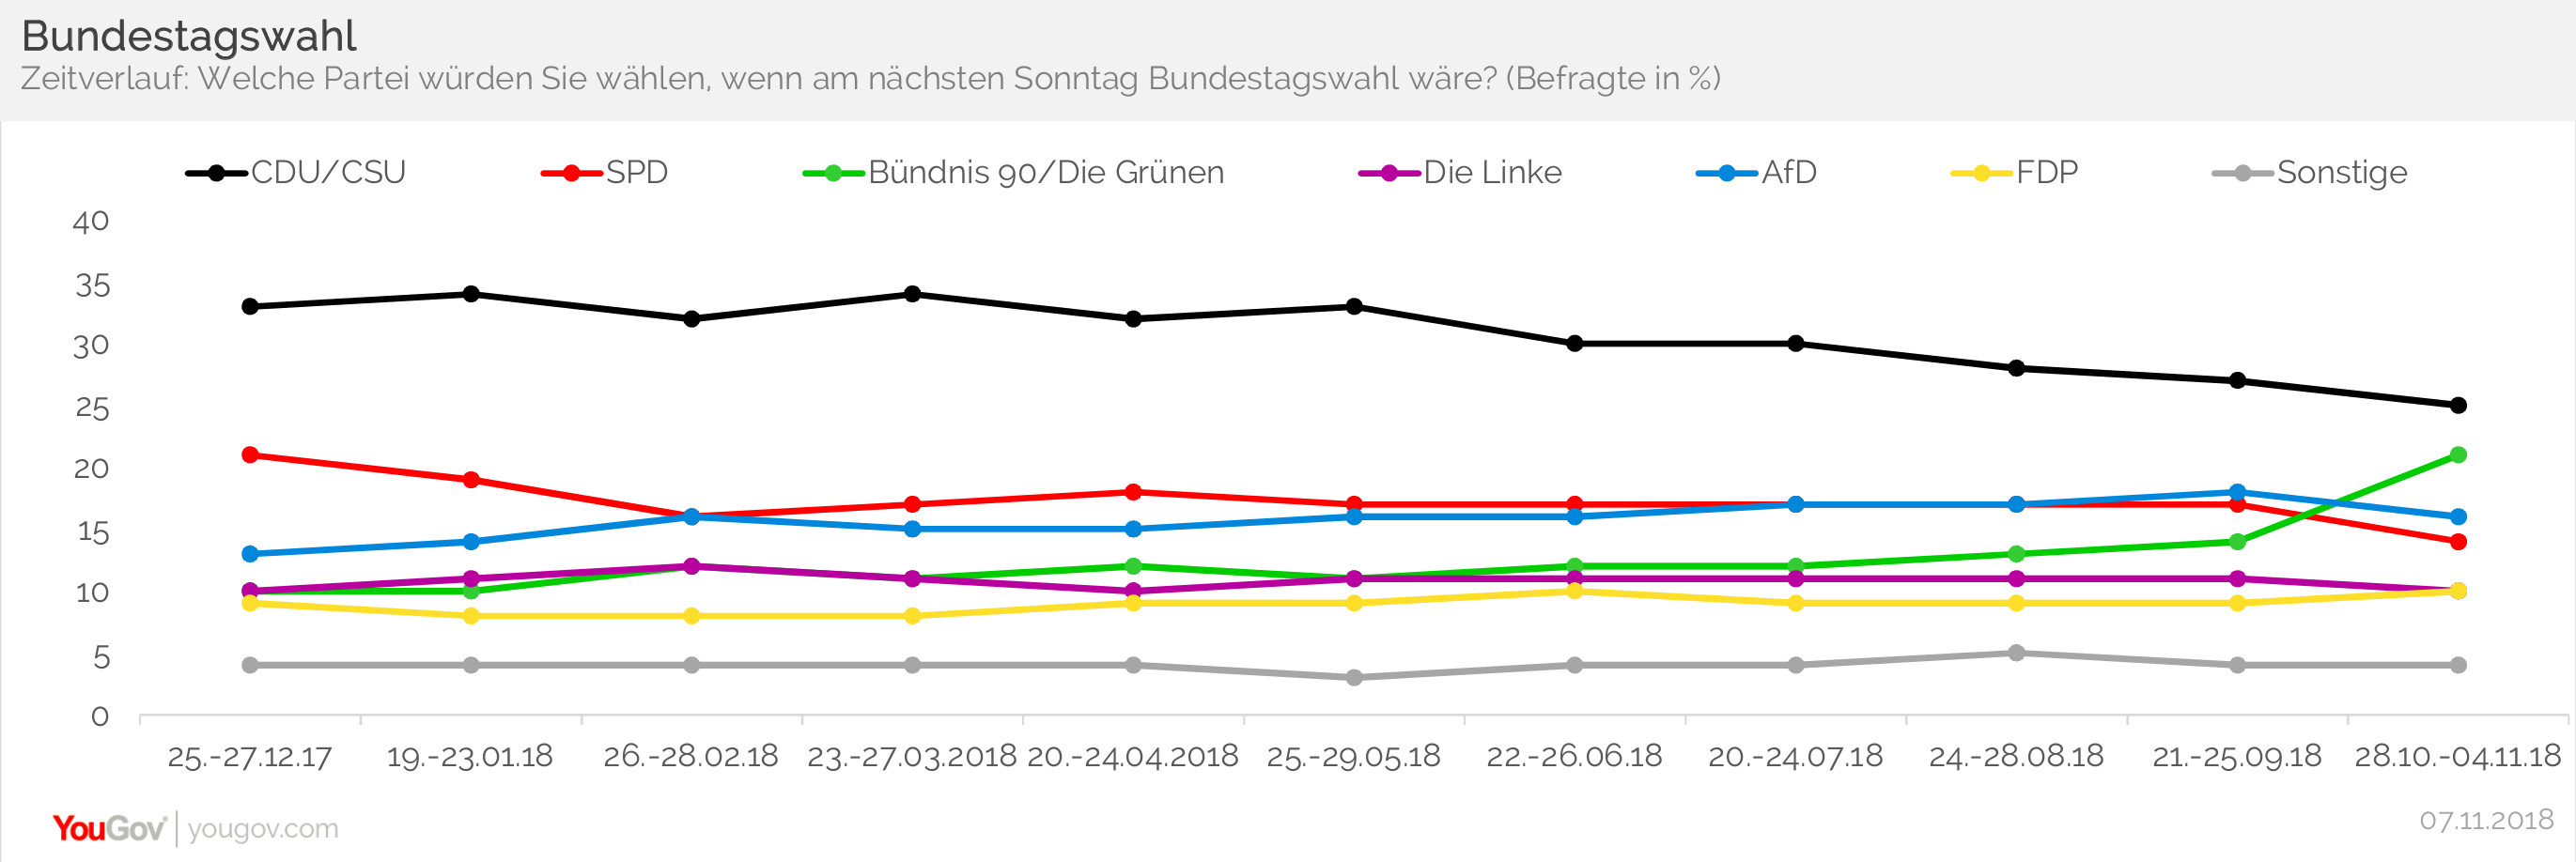 Bundestagswahl Zeitverlauf